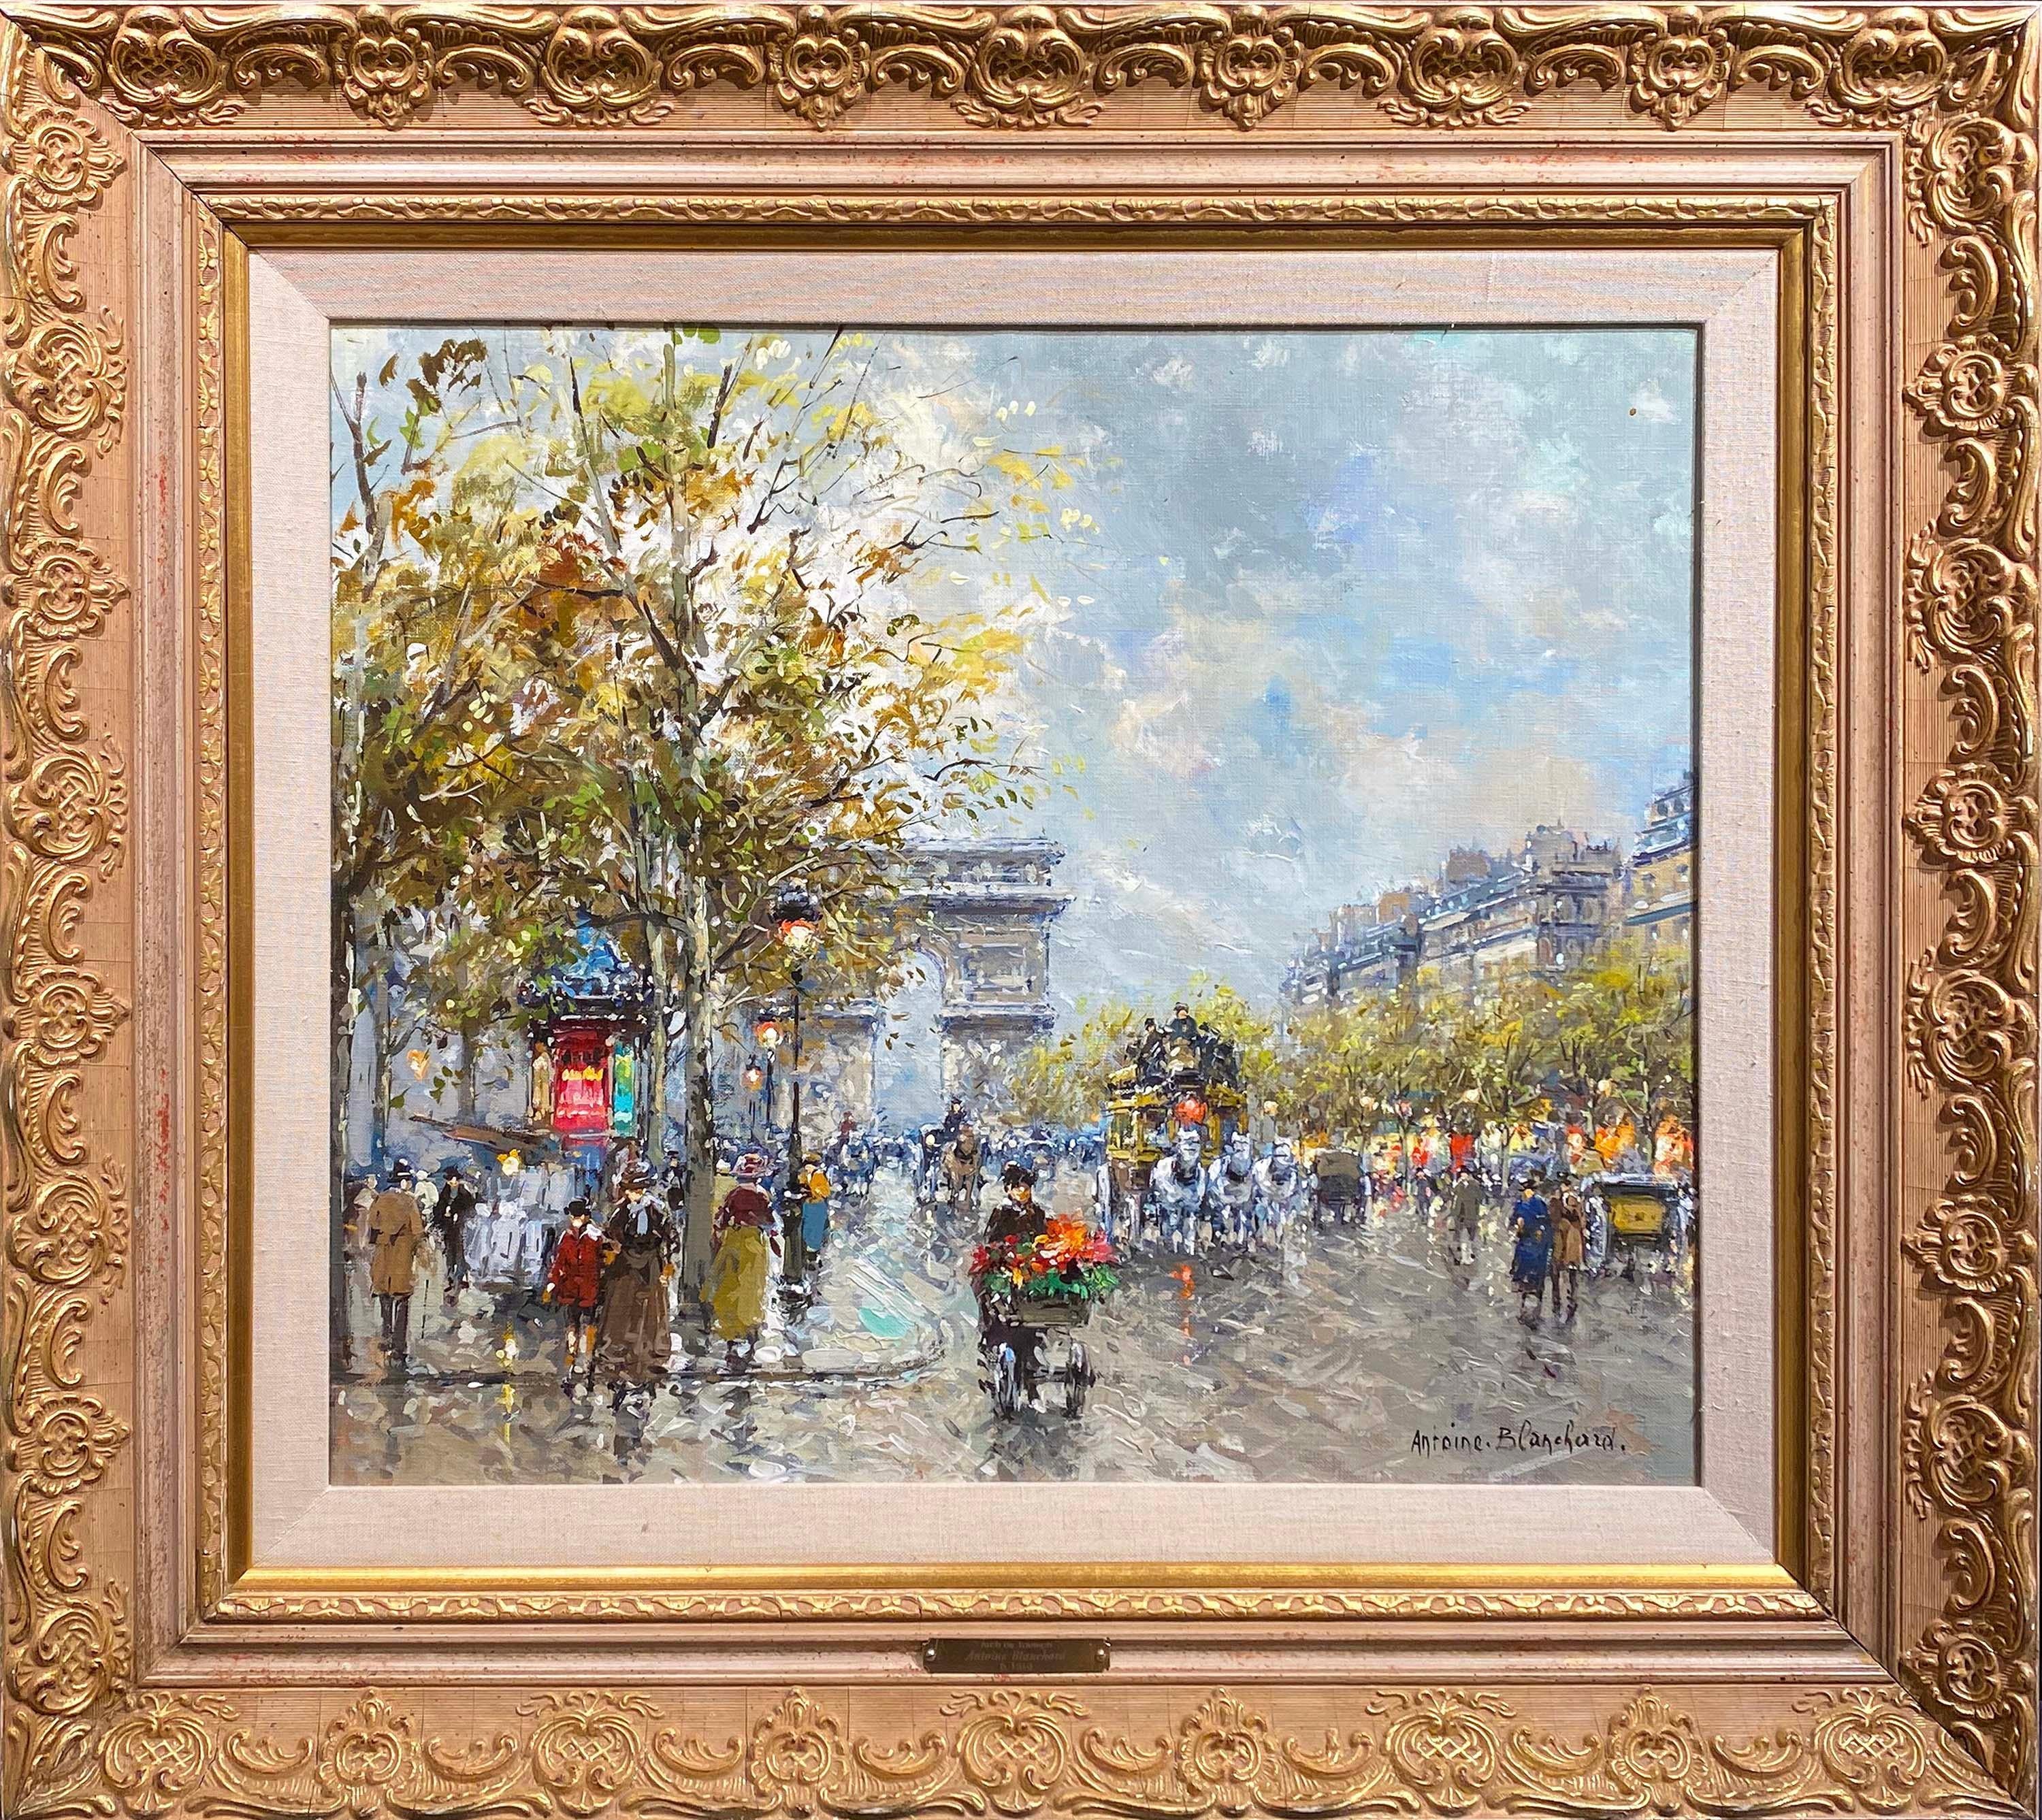 Avenue des Champs-Elysses, Paris - Painting by Antoine Blanchard